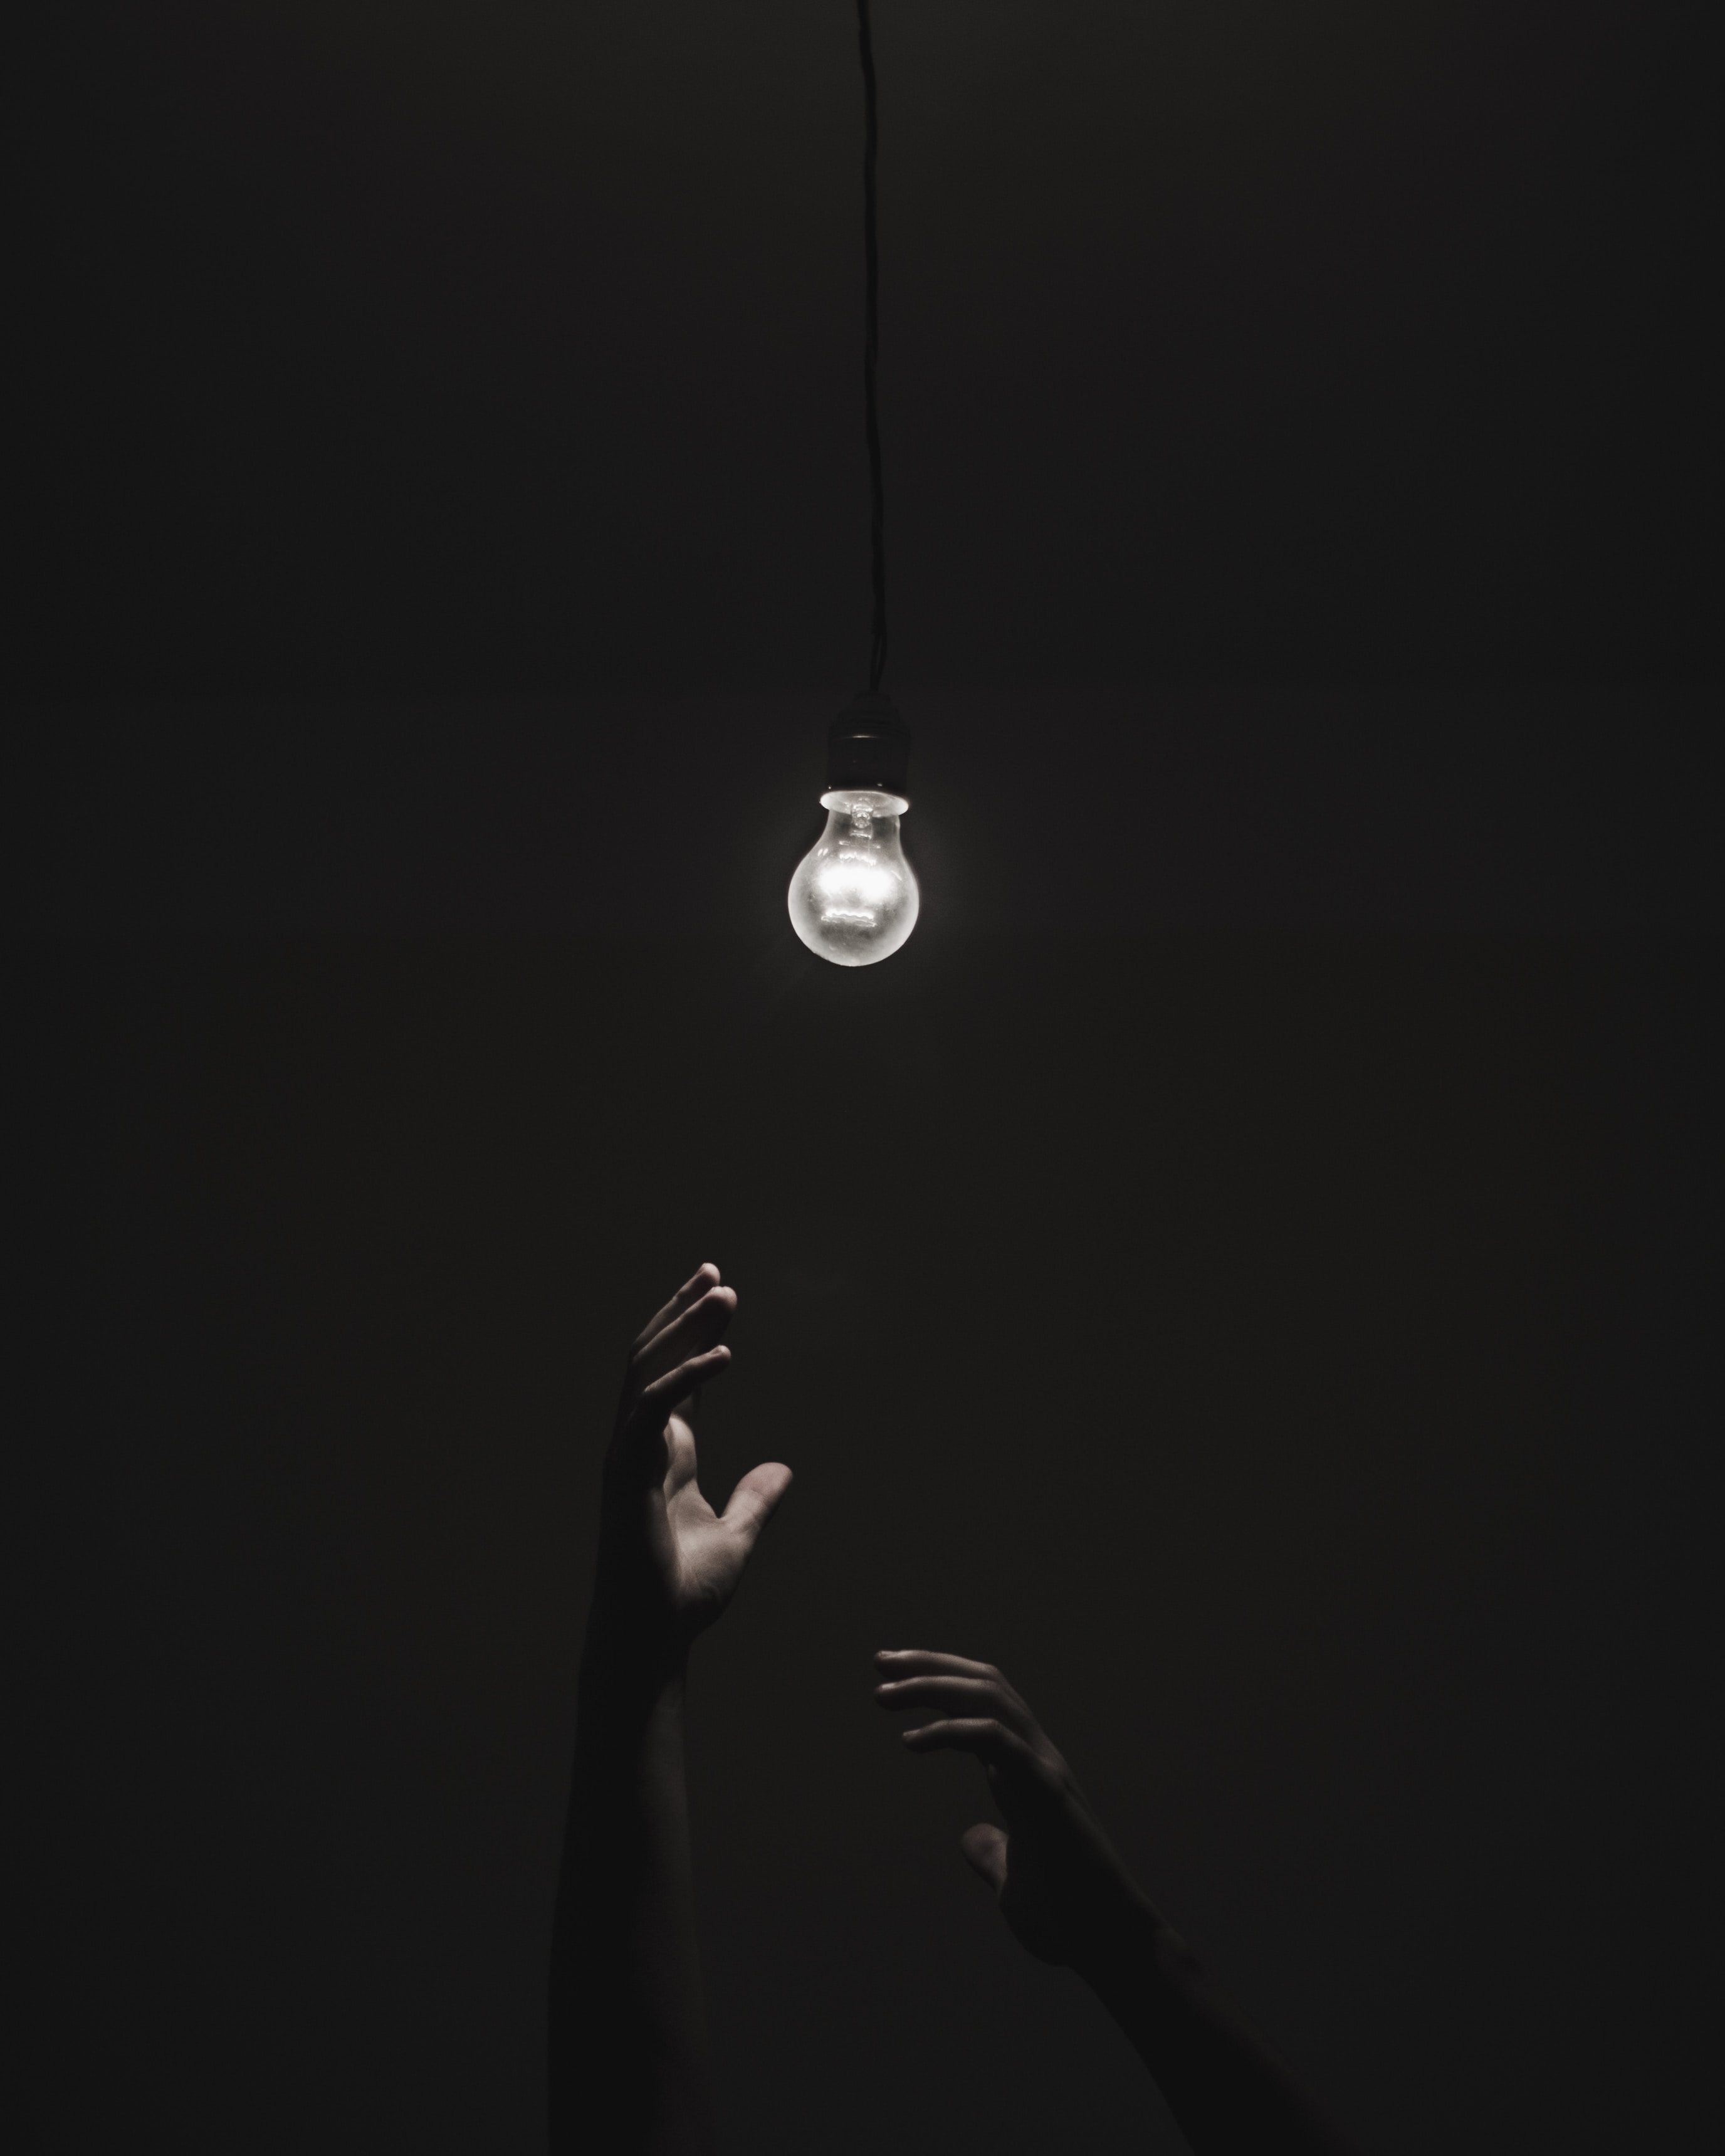 dark, black, hands, illumination, lighting, light bulb